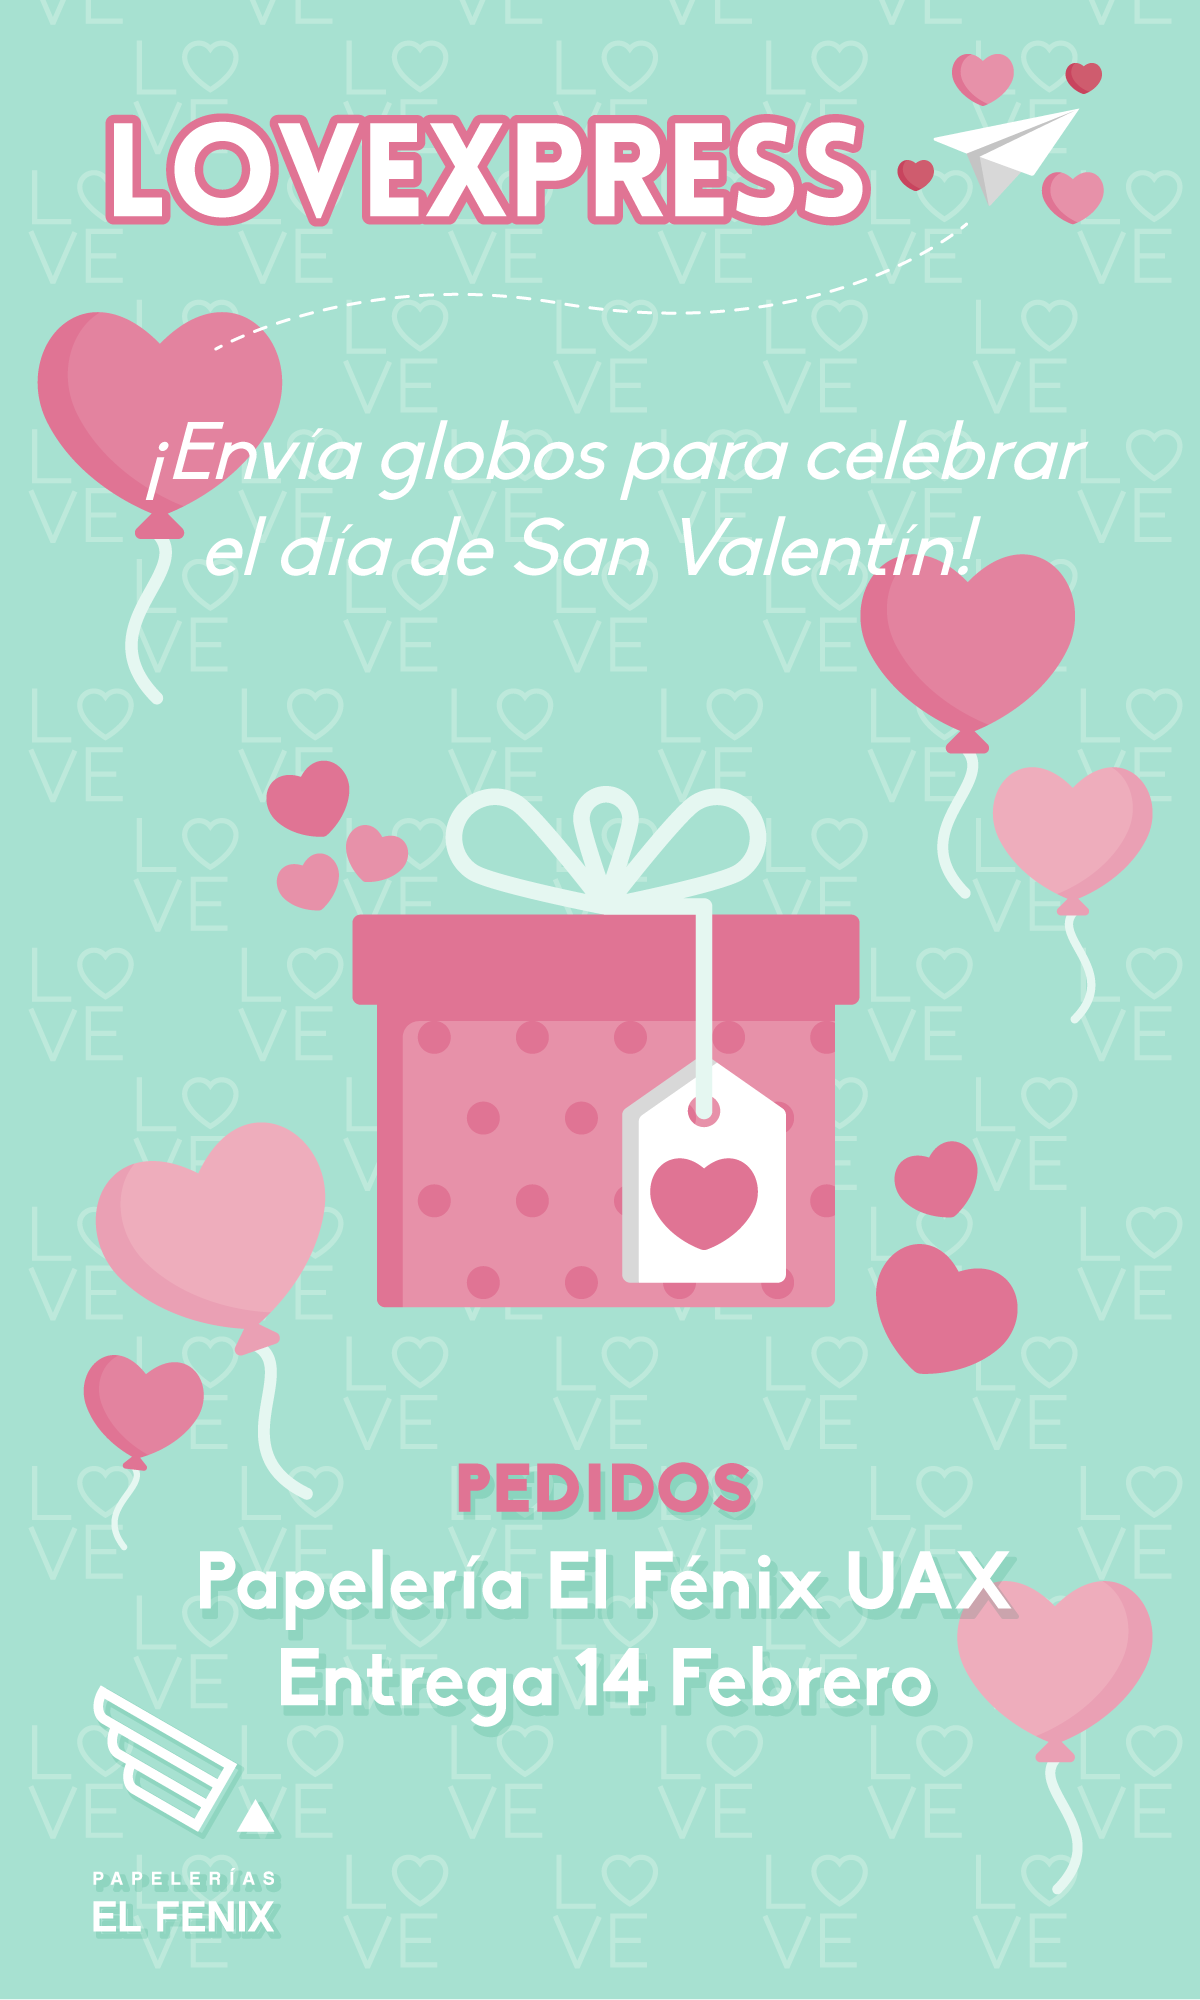 Lovexpress, globos para celebrar San Valentín